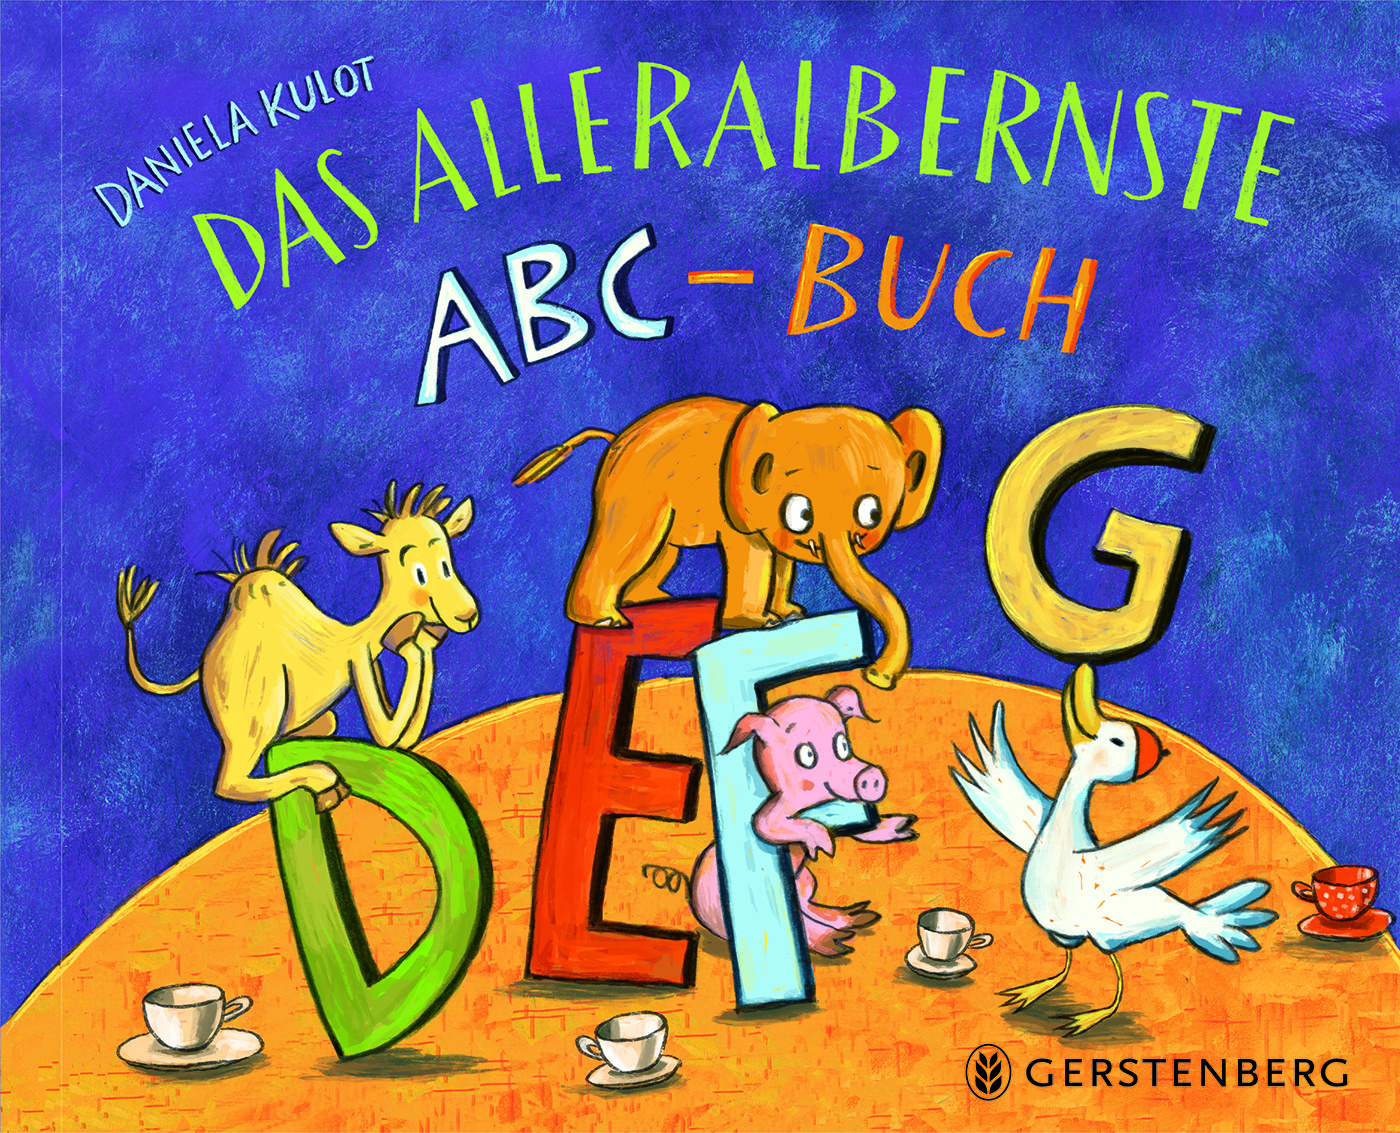 Buchcover "Das alleralbernste ABC-Buch", Gerstenberg 